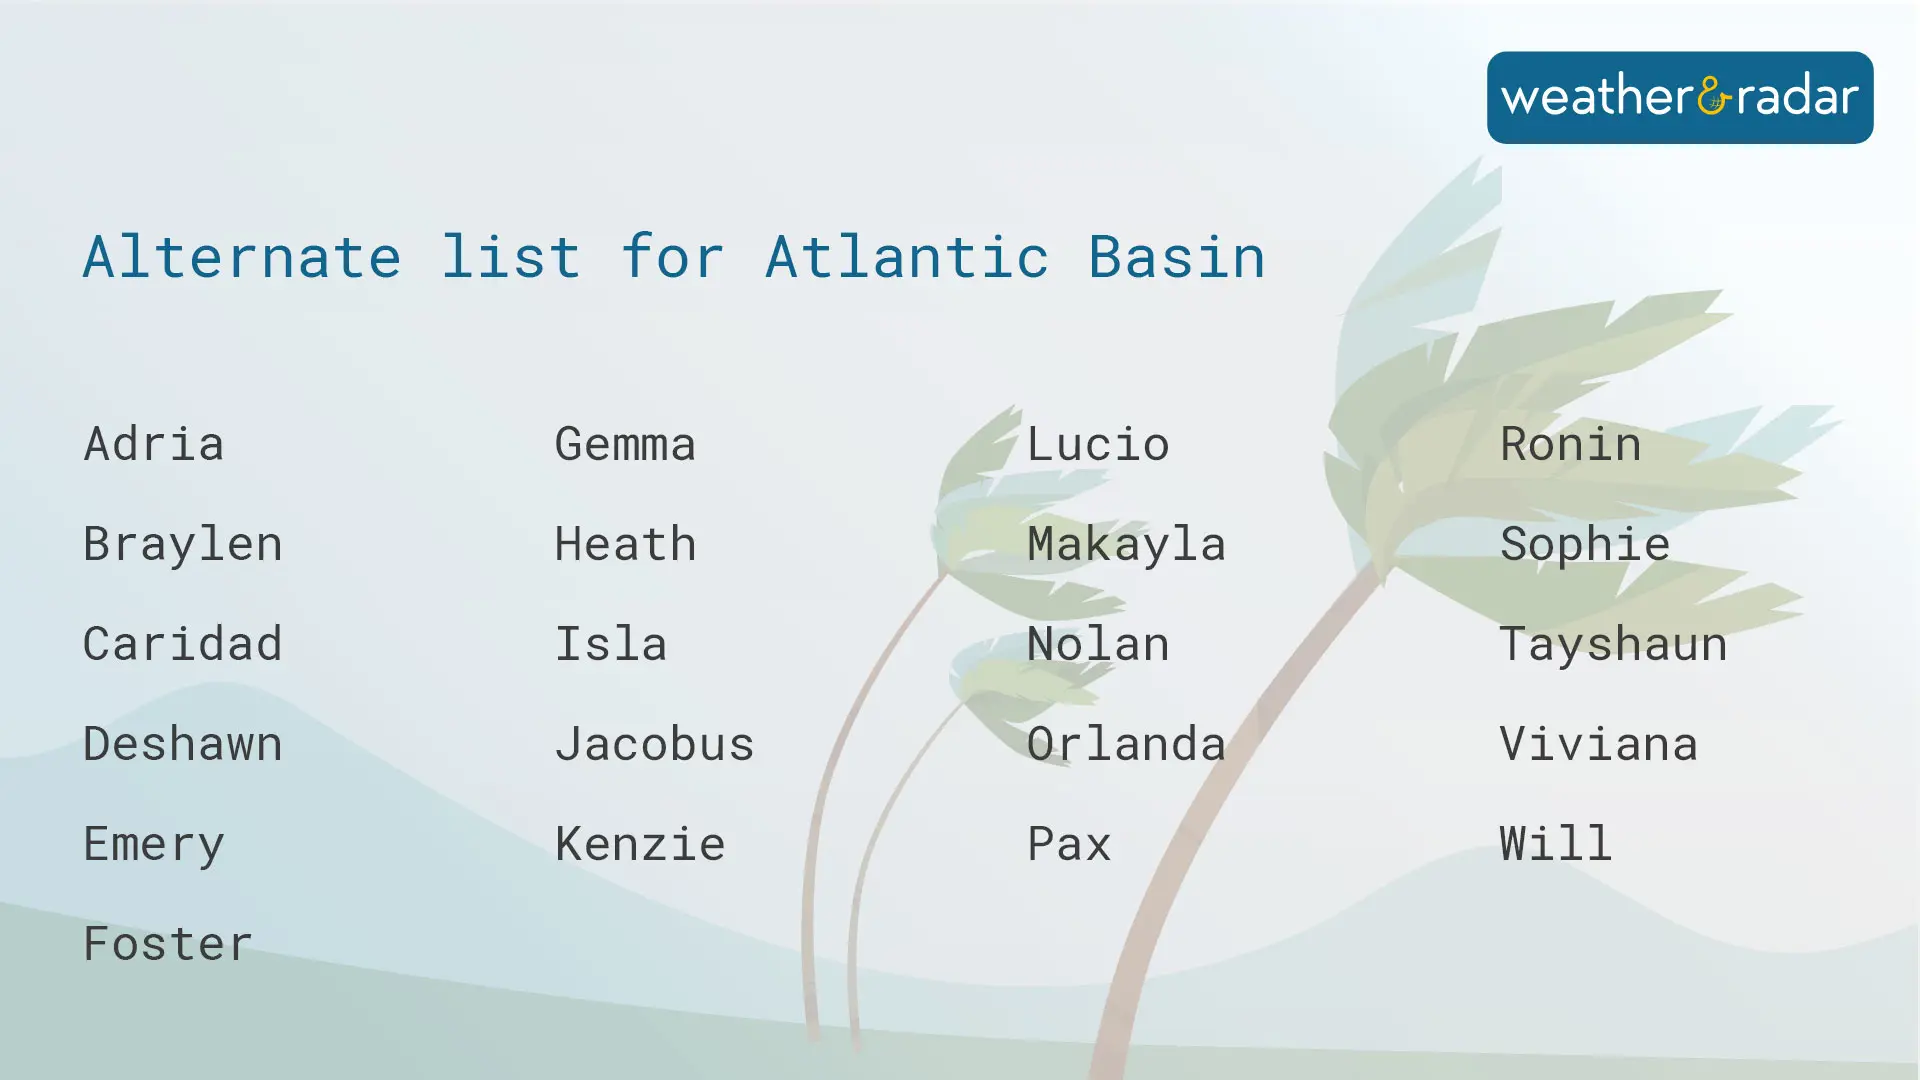 Alternate list for the Atlantic Basin. 